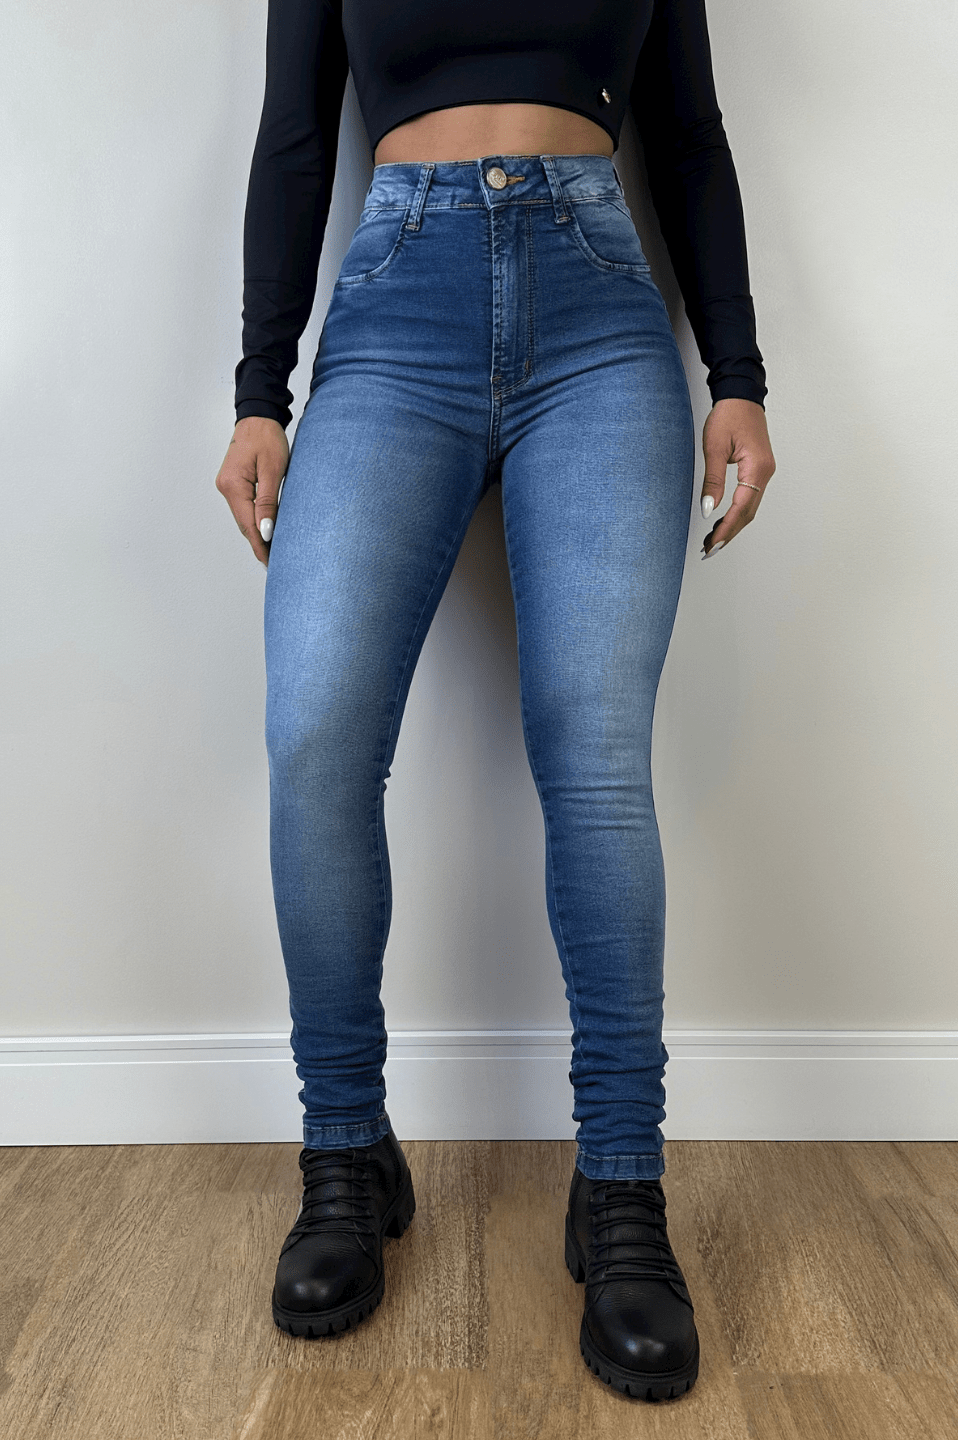 Atacado Da Moda Calça Jeans Feminina Jogger Destroyed, 59% OFF